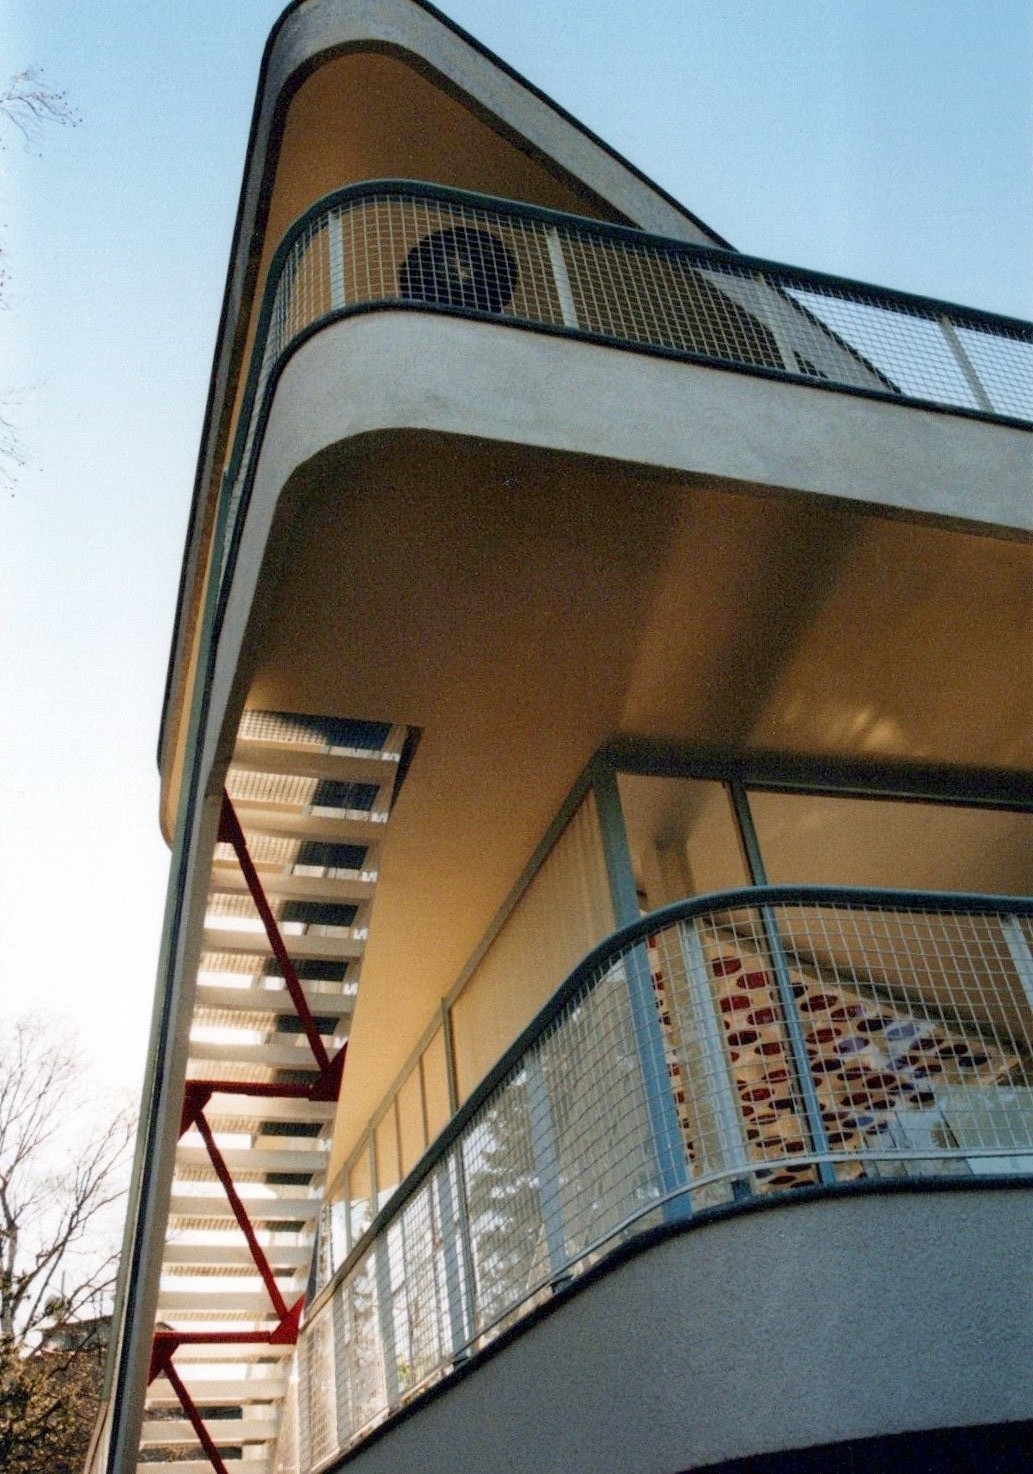 Fotografie: Blick zur Außentreppe aus gekippter Perspektive (Haus Schminke RR-F)